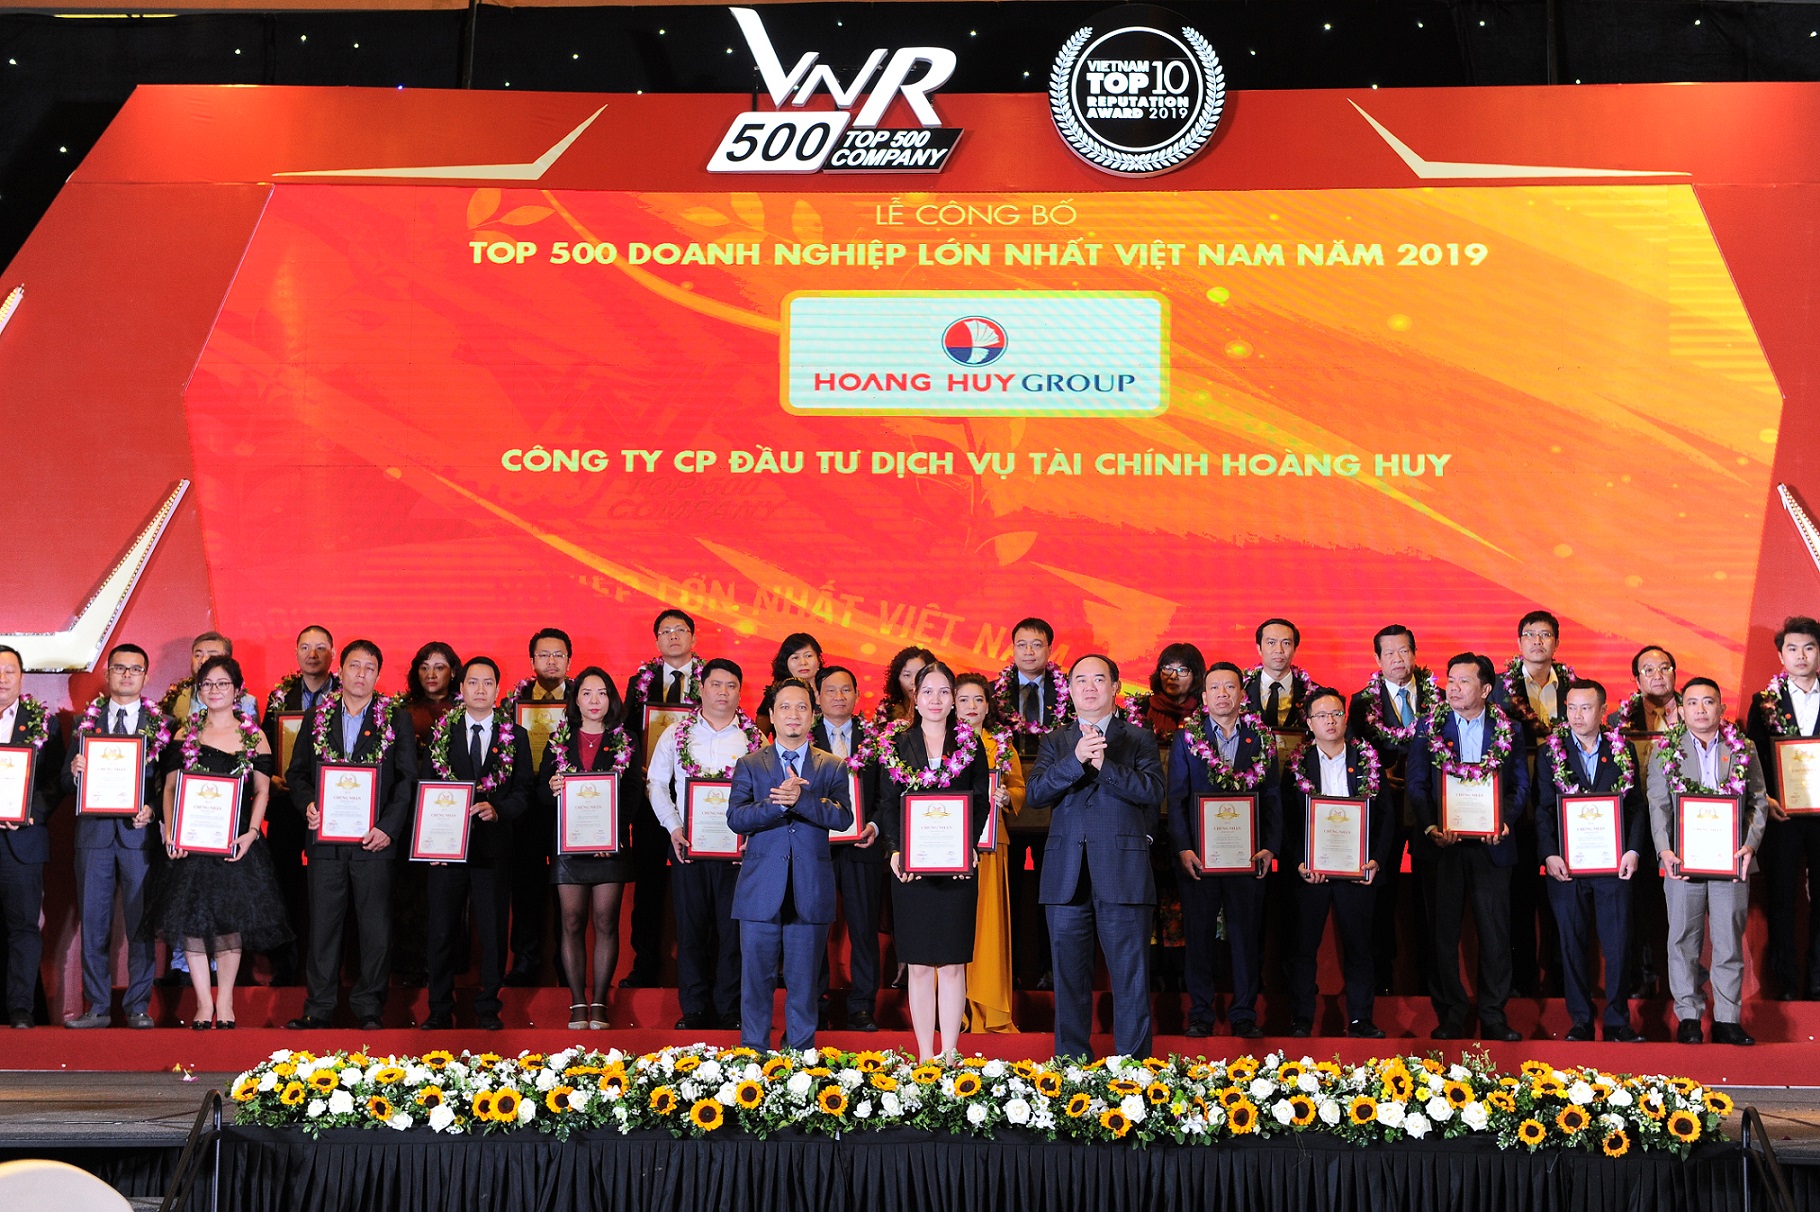 Tài chính Hoàng Huy khẳng định vị thế Top 500 doanh nghiệp lớn nhất Việt Nam